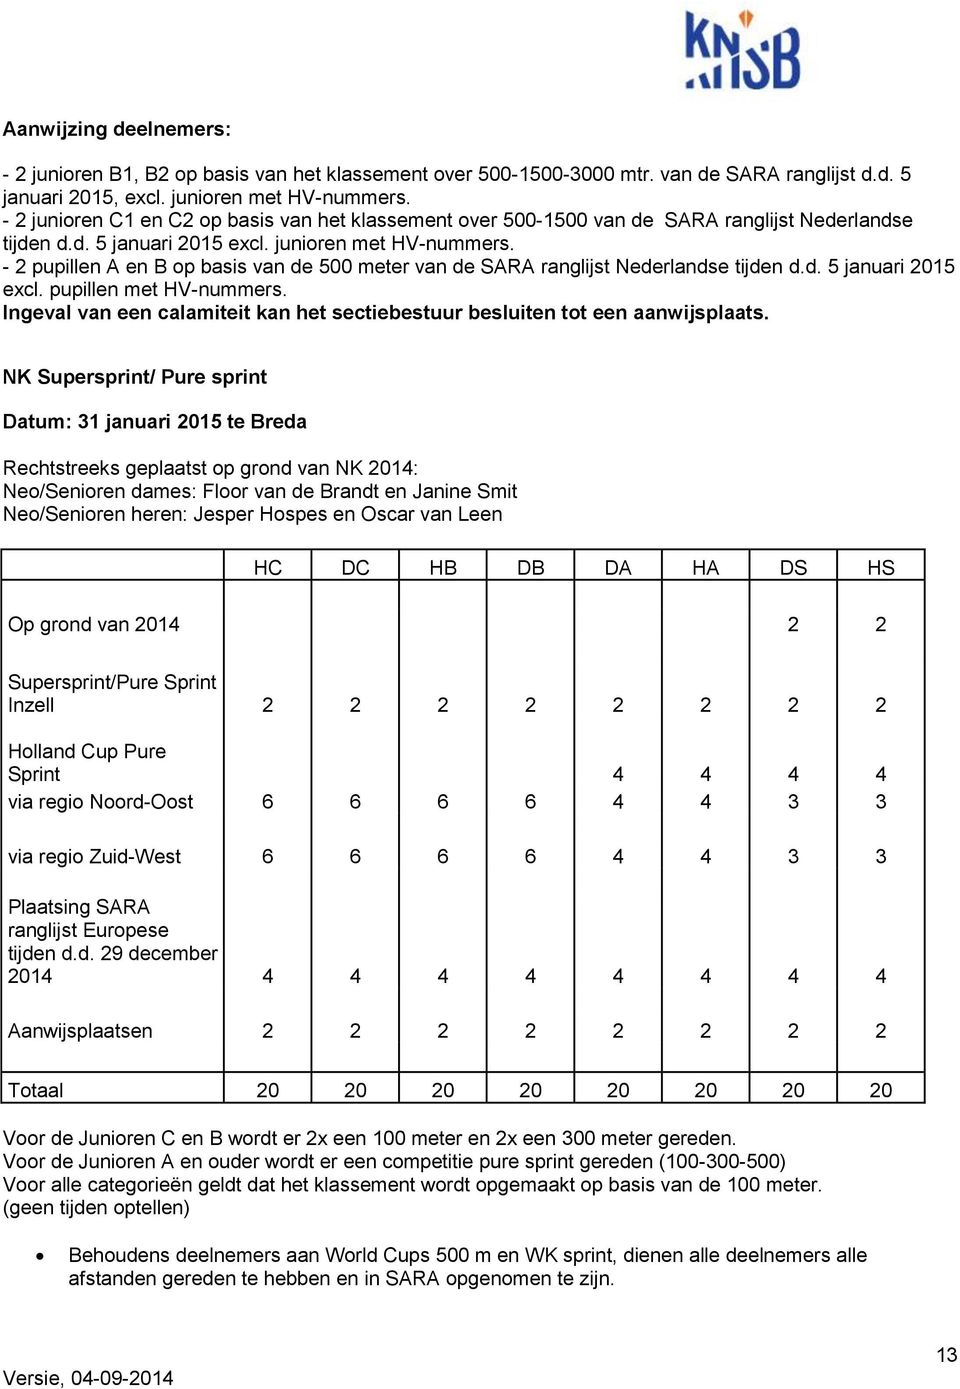 - 2 pupillen A en B op basis van de 500 meter van de SARA ranglijst Nederlandse tijden d.d. 5 januari 2015 excl. pupillen met HV-nummers.